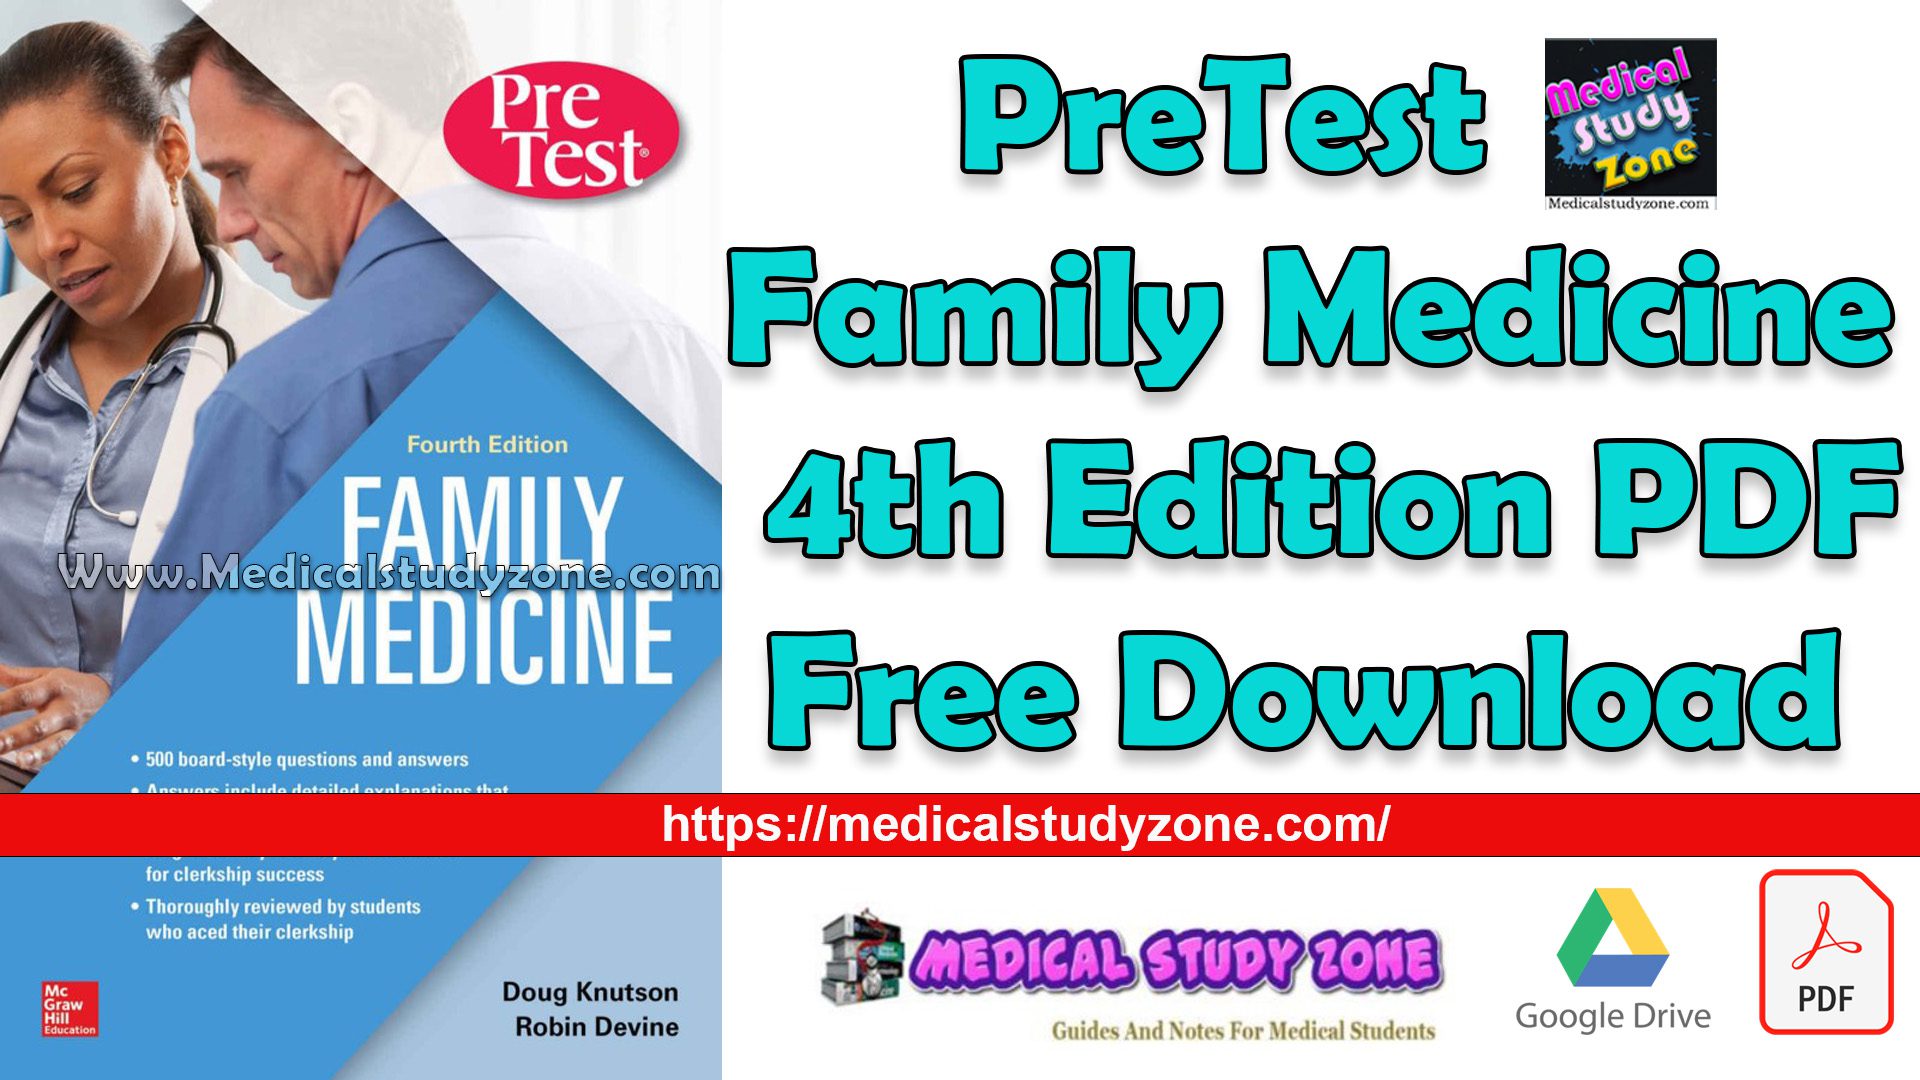 PreTest Family Medicine 4th Edition PDF Free Download